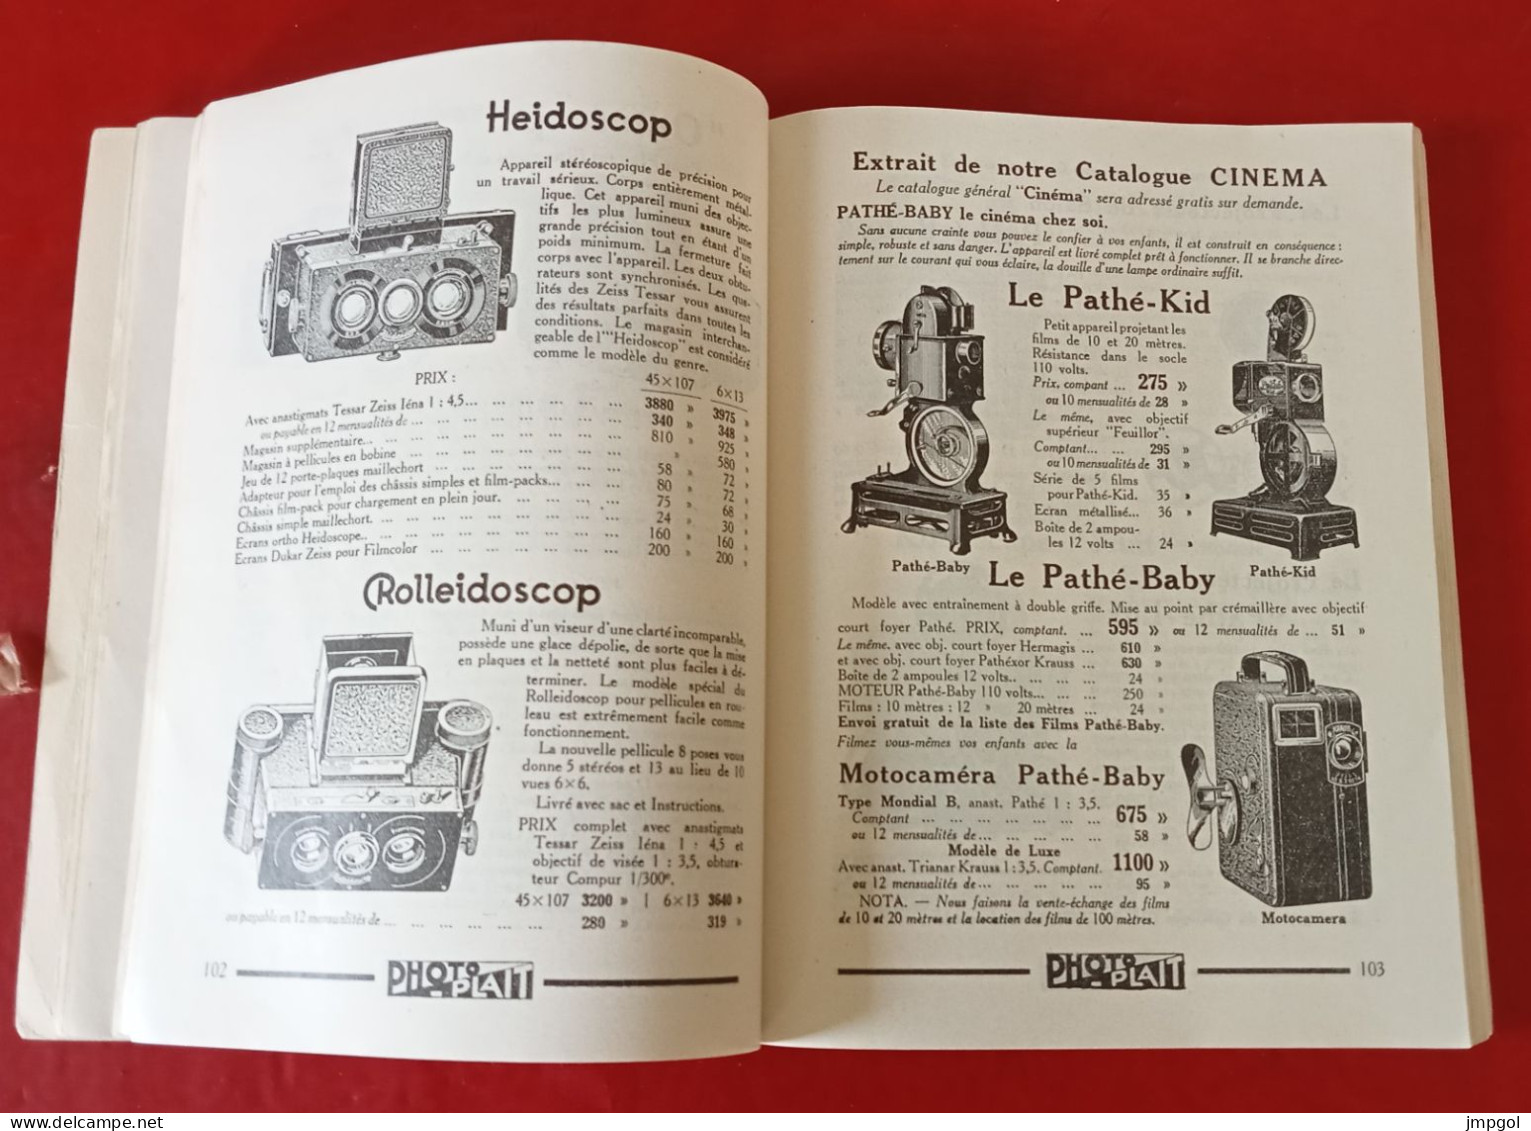 Catalogue Photo Plait 1934 Appareils Photo Zeiss Kodak Leitz Projecteurs Accessoires Divers - Photographie